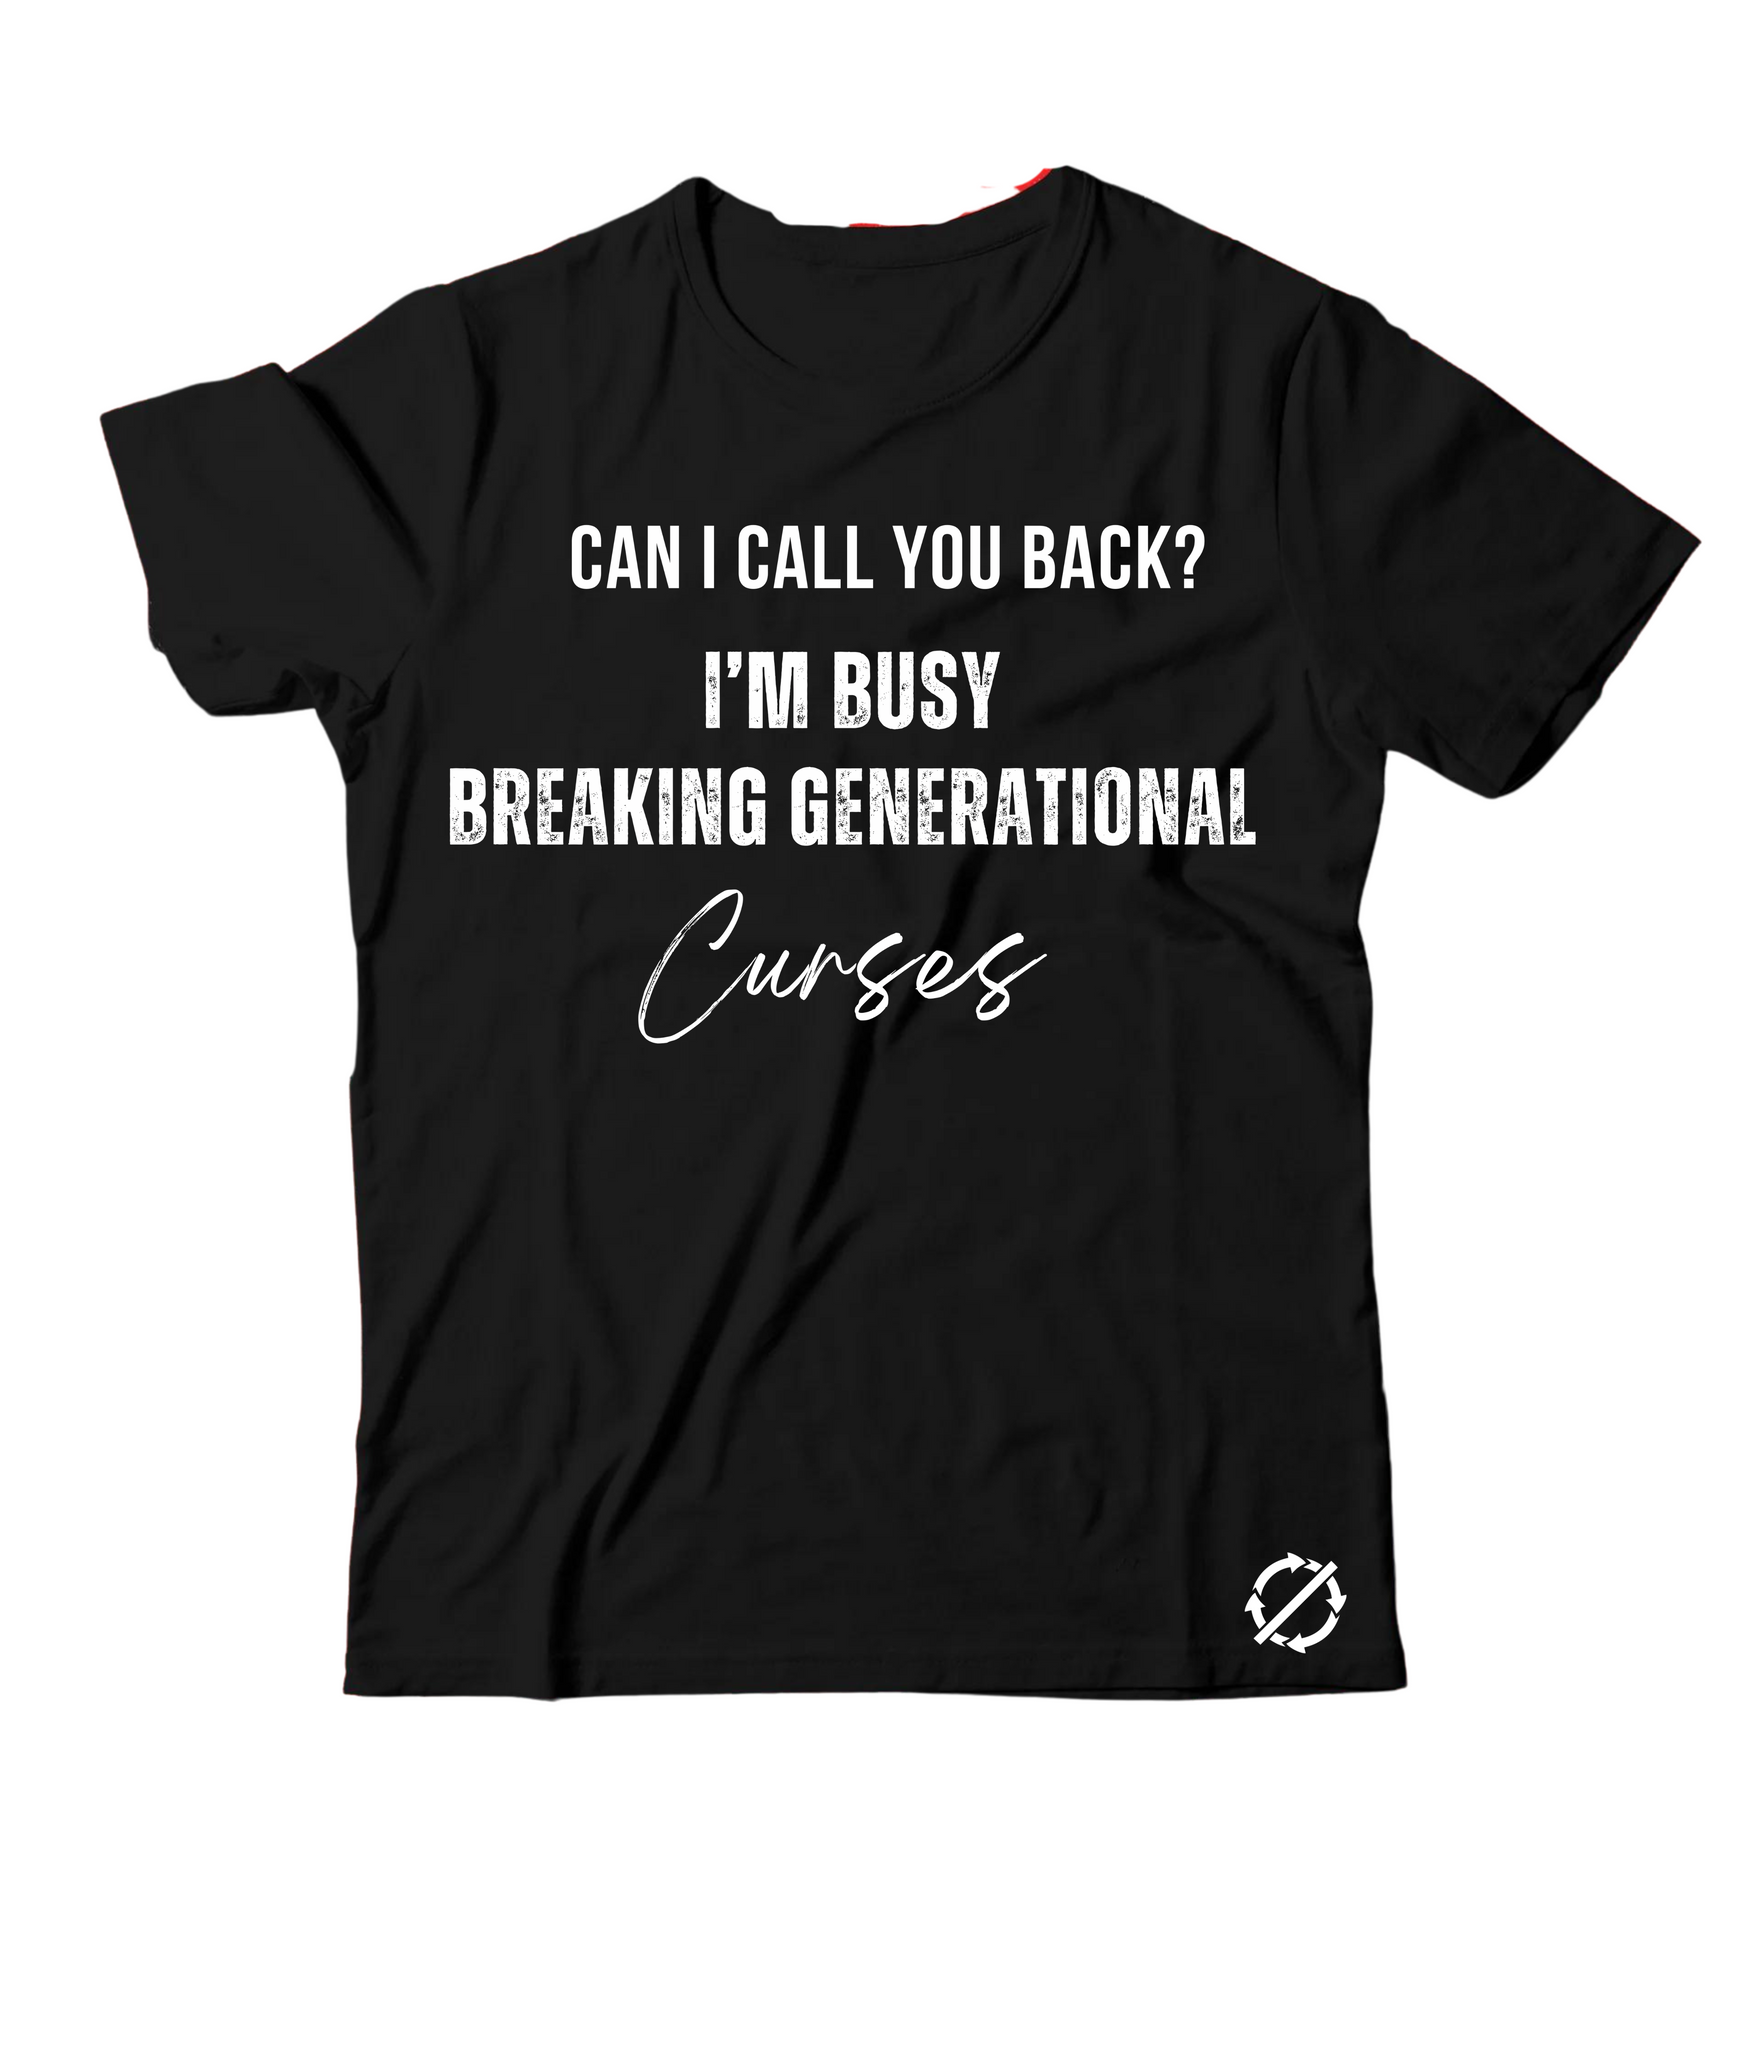 Black "Call You Back" Shirt